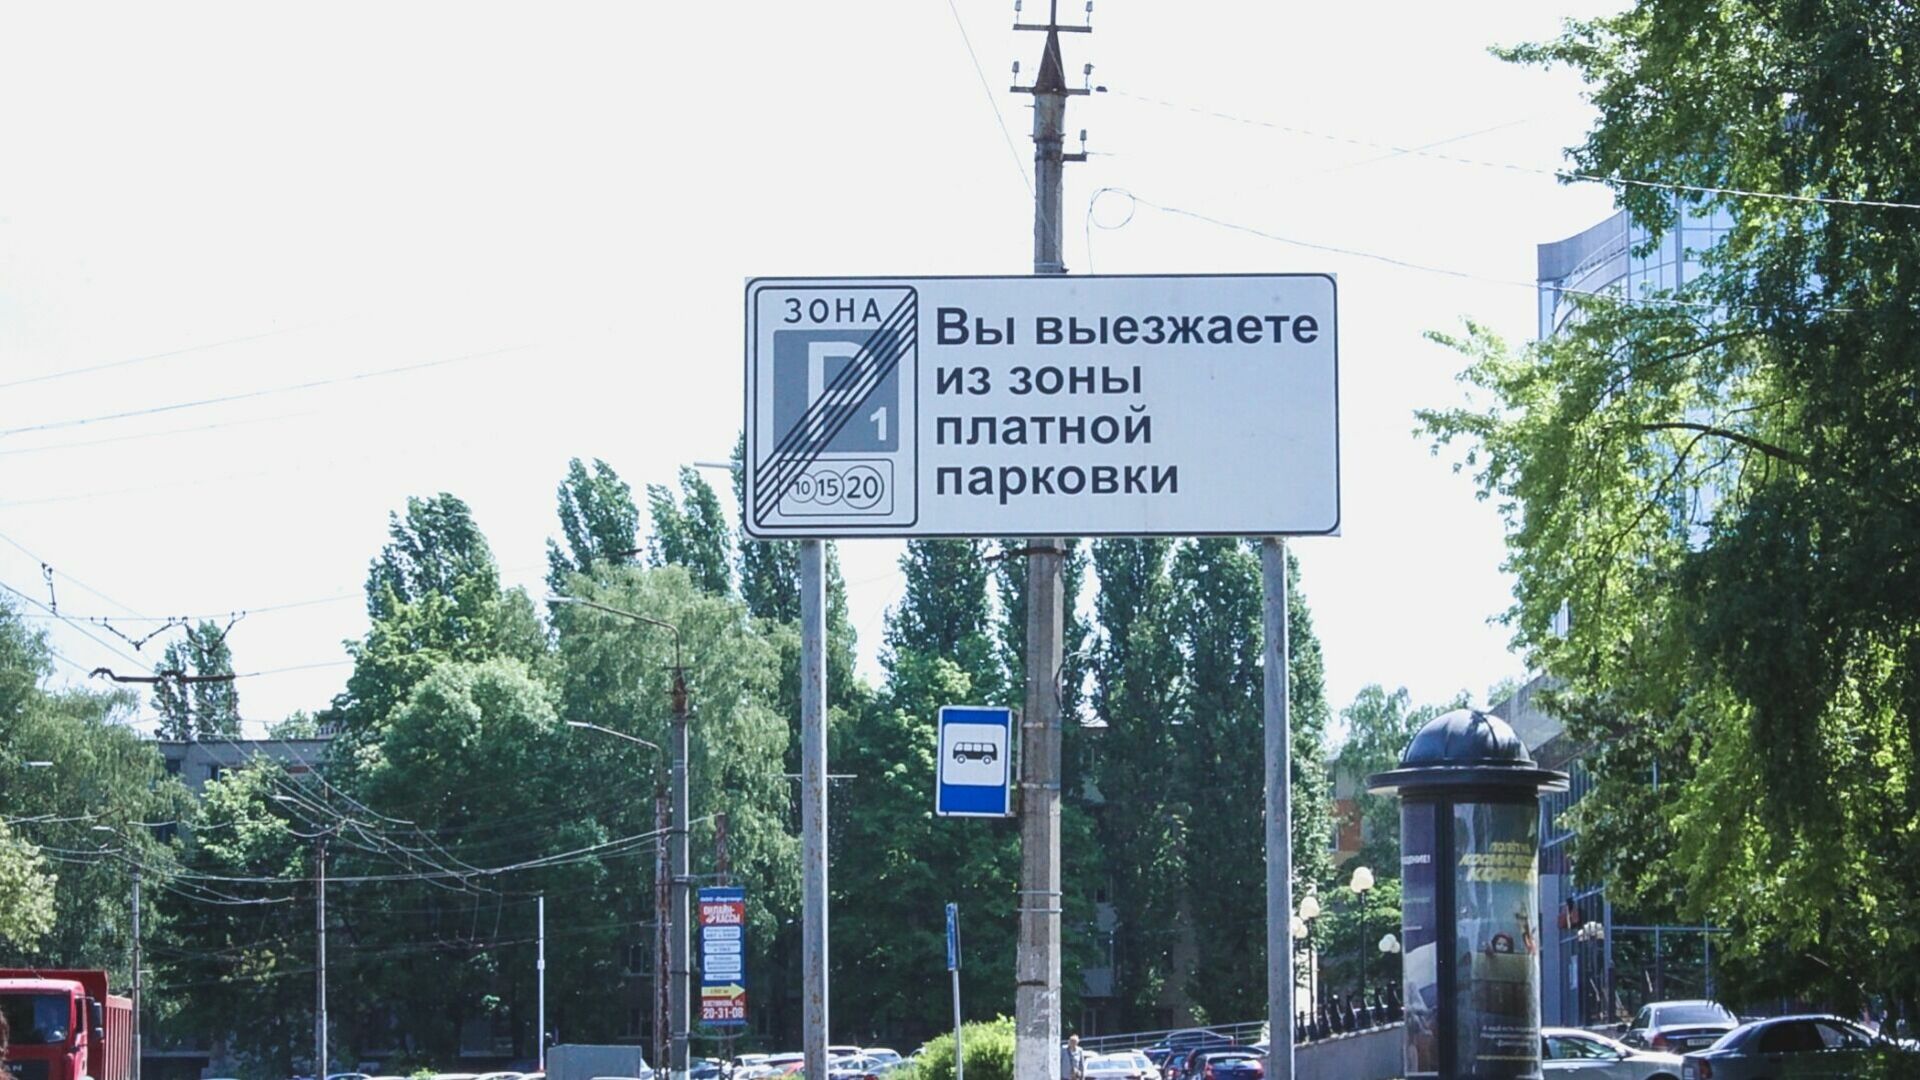 Белгородская компания Жернового займётся платными парковками в Курске